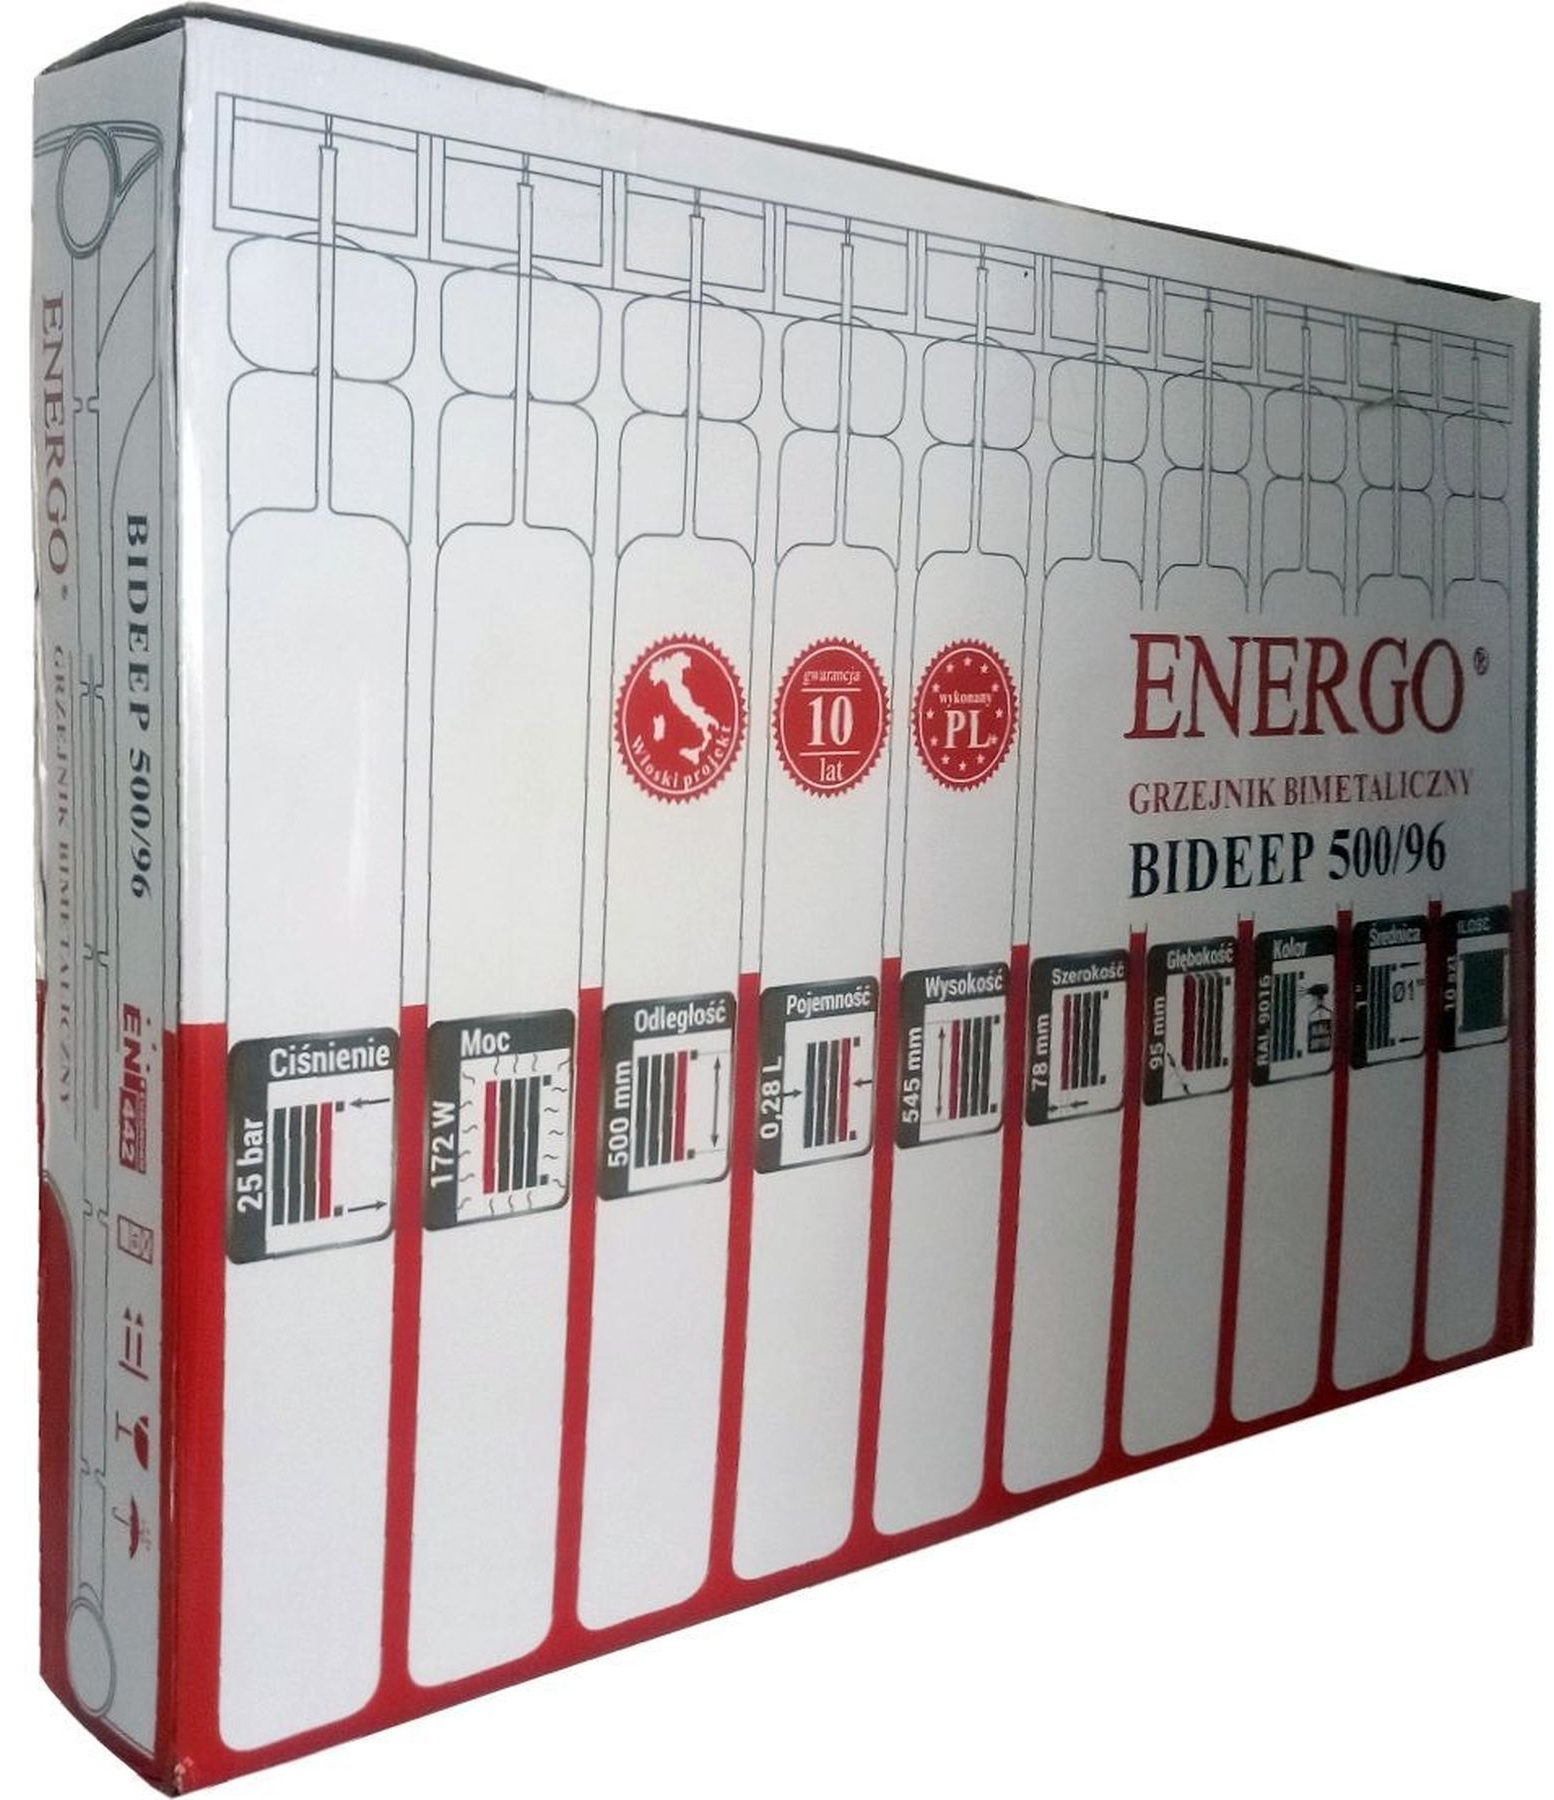 Радіатор для опалення Energo BIDEEP 500/96 (кратно 10) 000020261 характеристики - фотографія 7